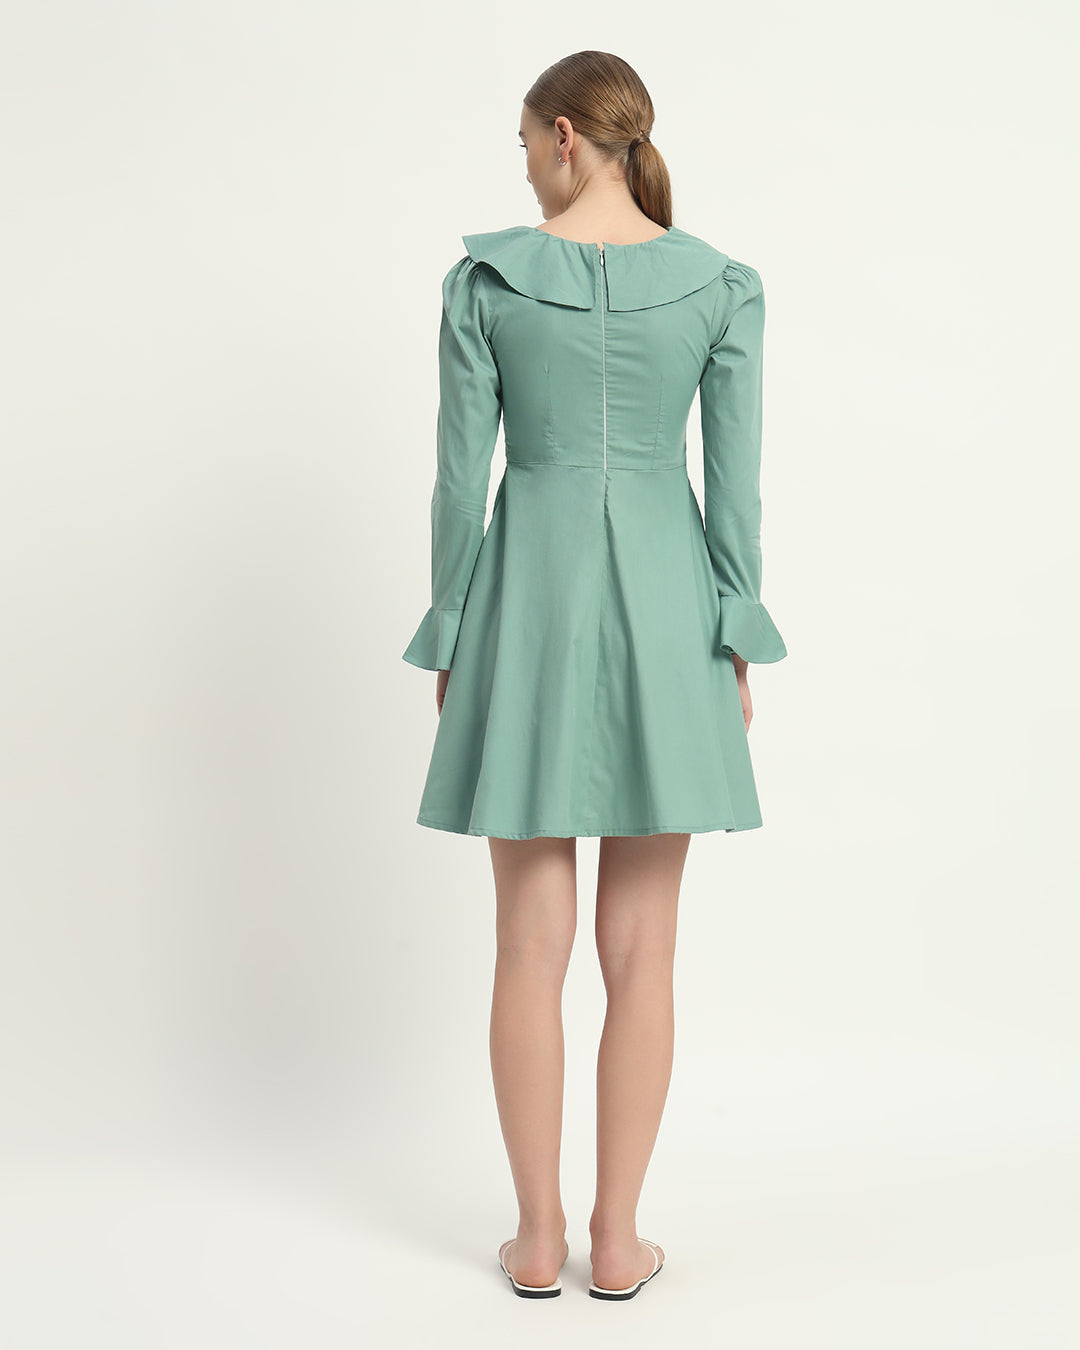 The Mint Fredonia Cotton Dress